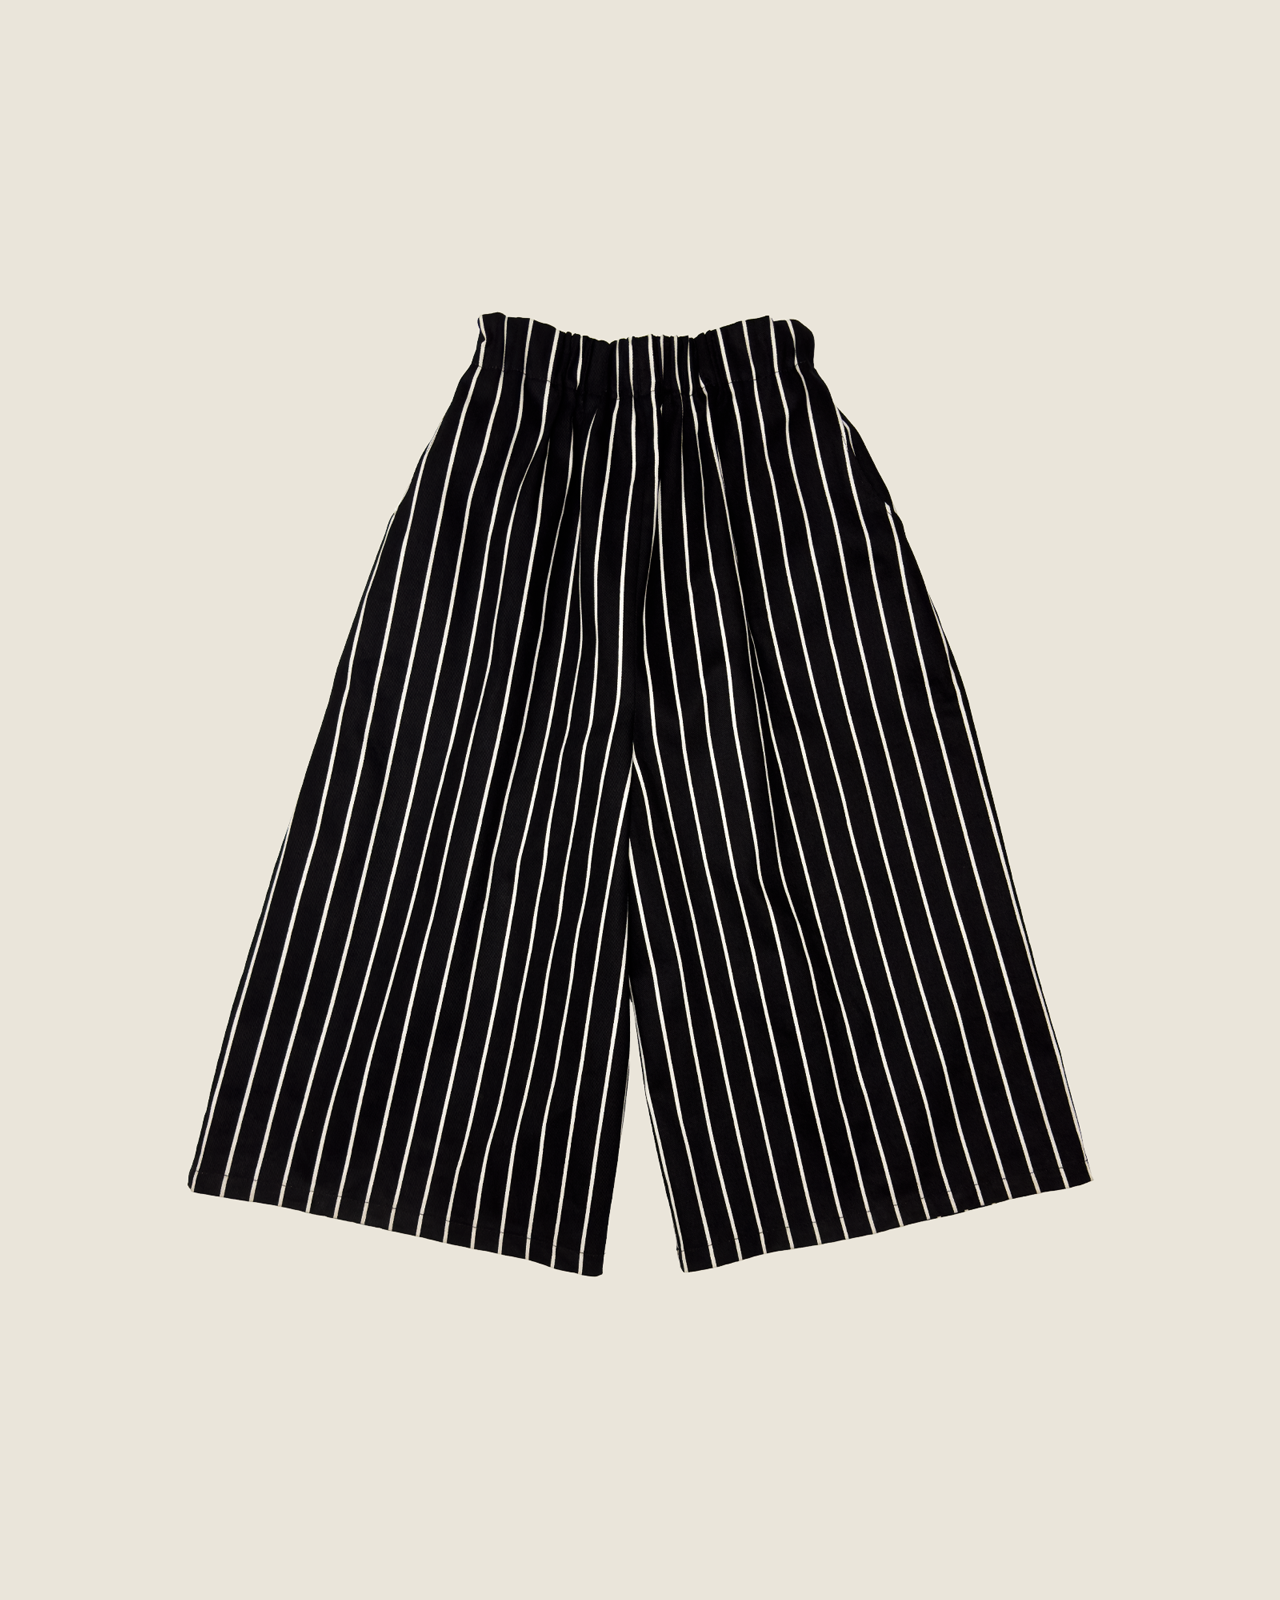 KENZO pants - stripes